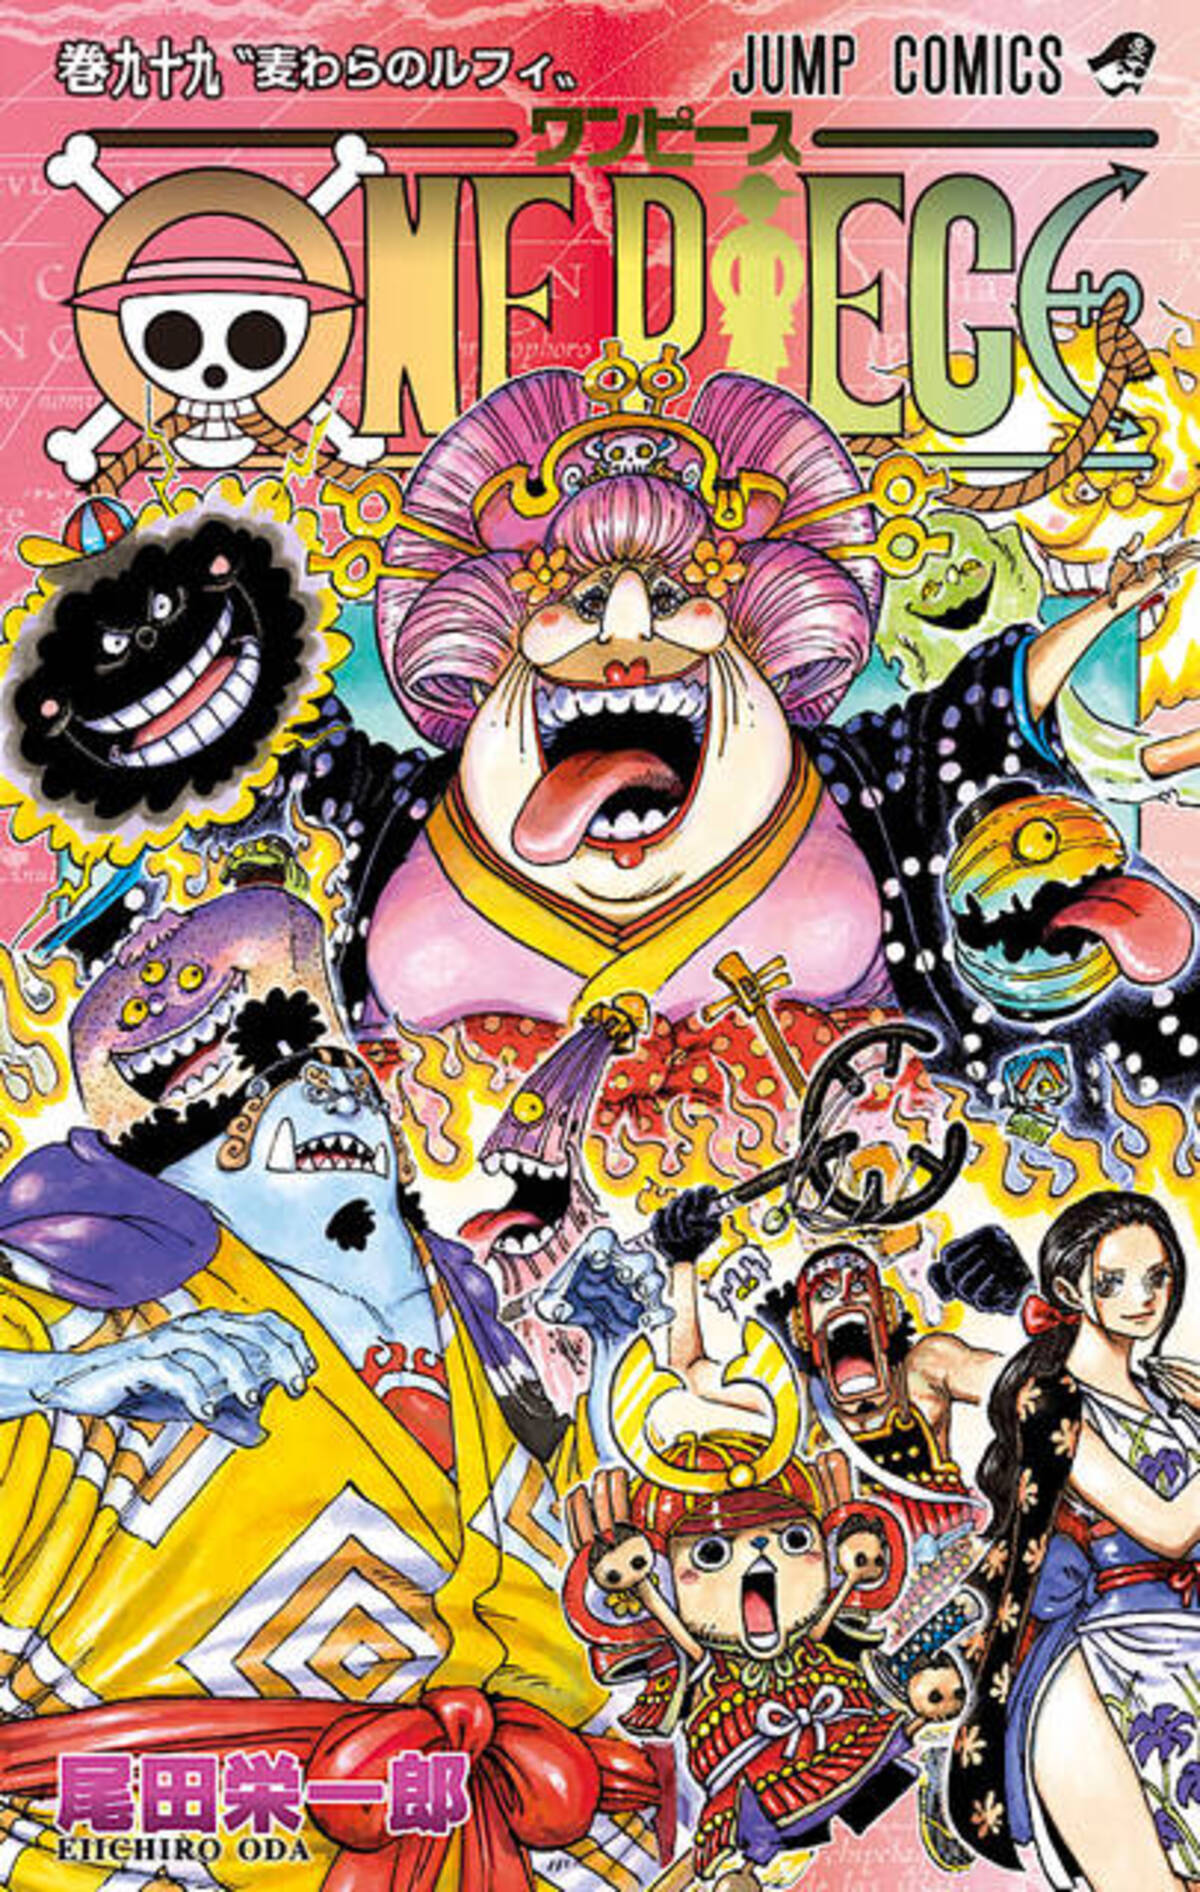 ルフィvsカイドウ 新宿で激闘 One Piece 99巻発売記念スペシャルムービー公開 21年6月4日 エキサイトニュース